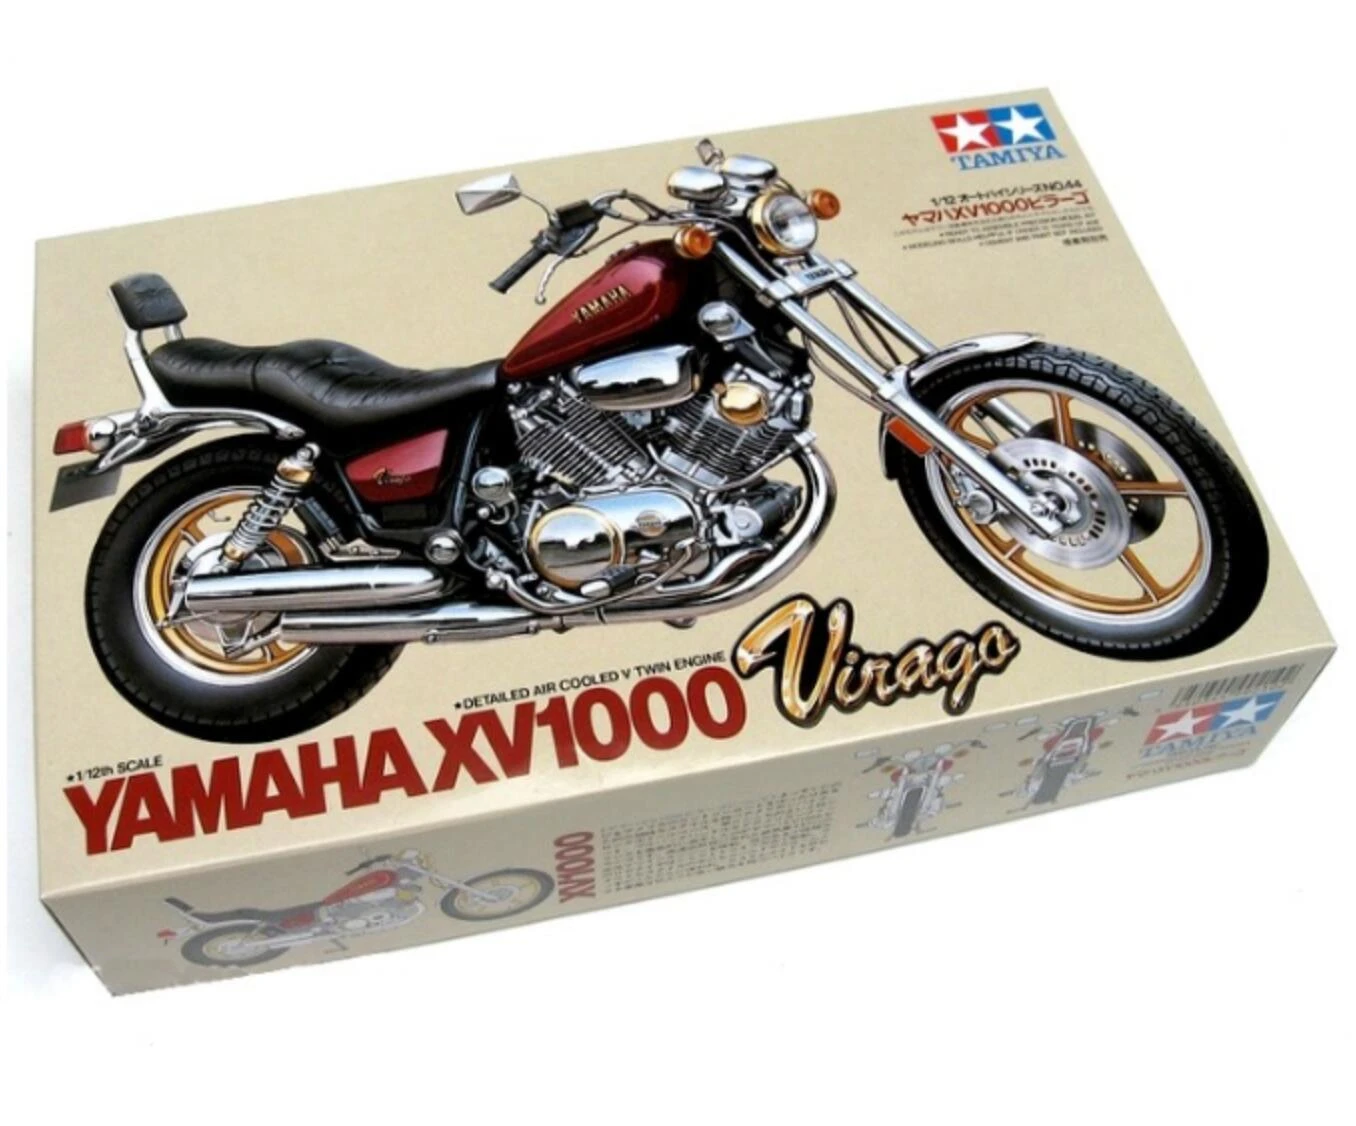 Tamiya 1/12 Yamaha Virago XV1000 Model Motorbike Kit 14044